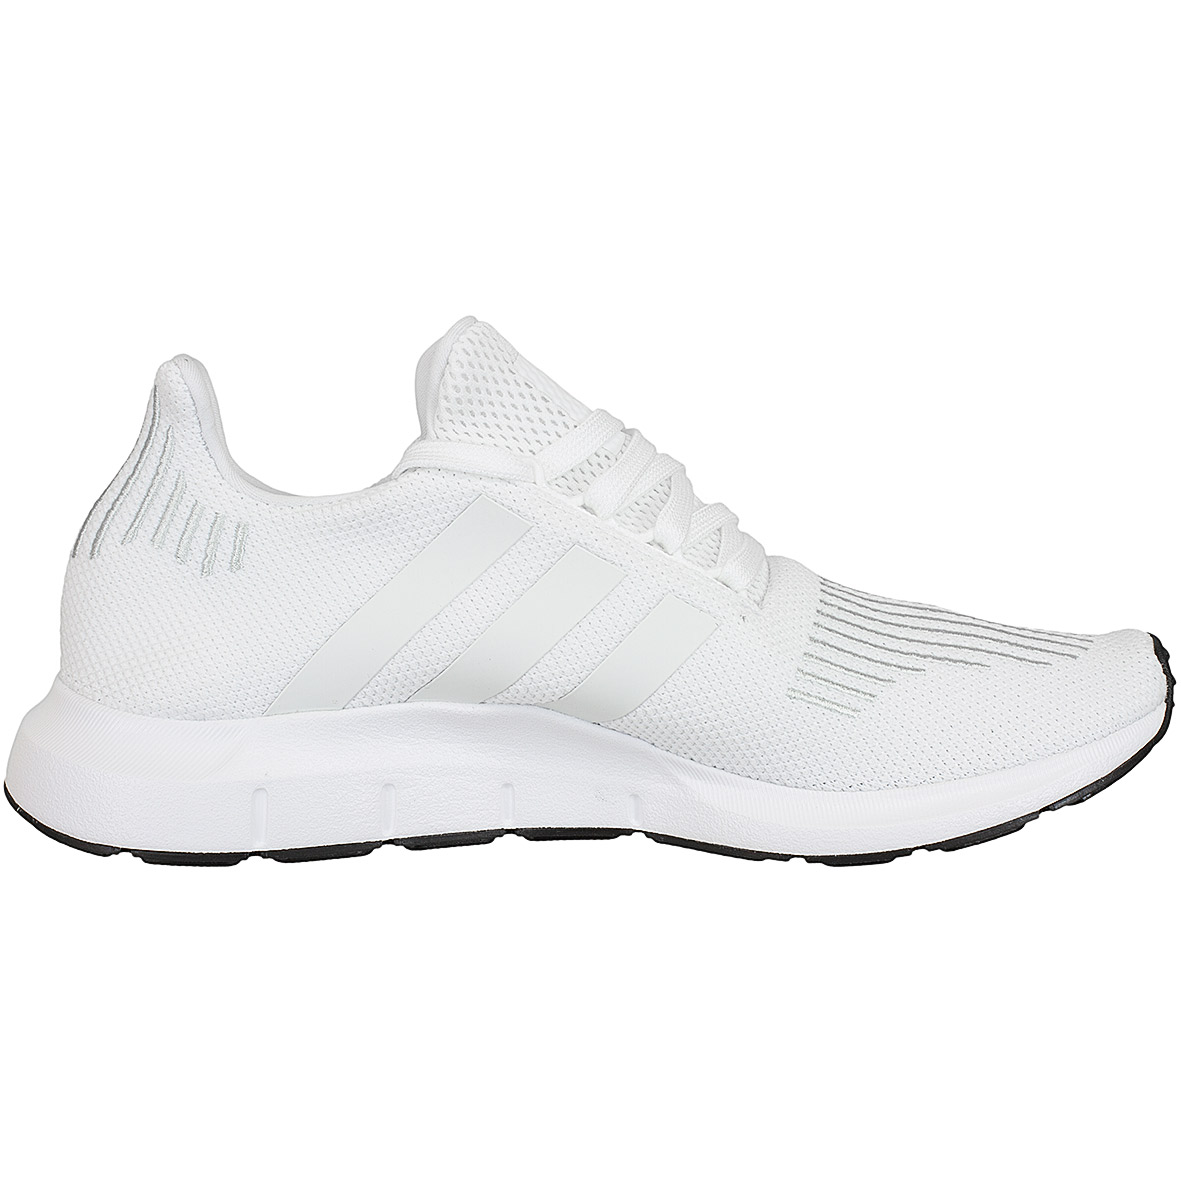 ☆ Adidas Originals Sneaker Swift Run weiß/weiß/schwarz - hier bestellen!